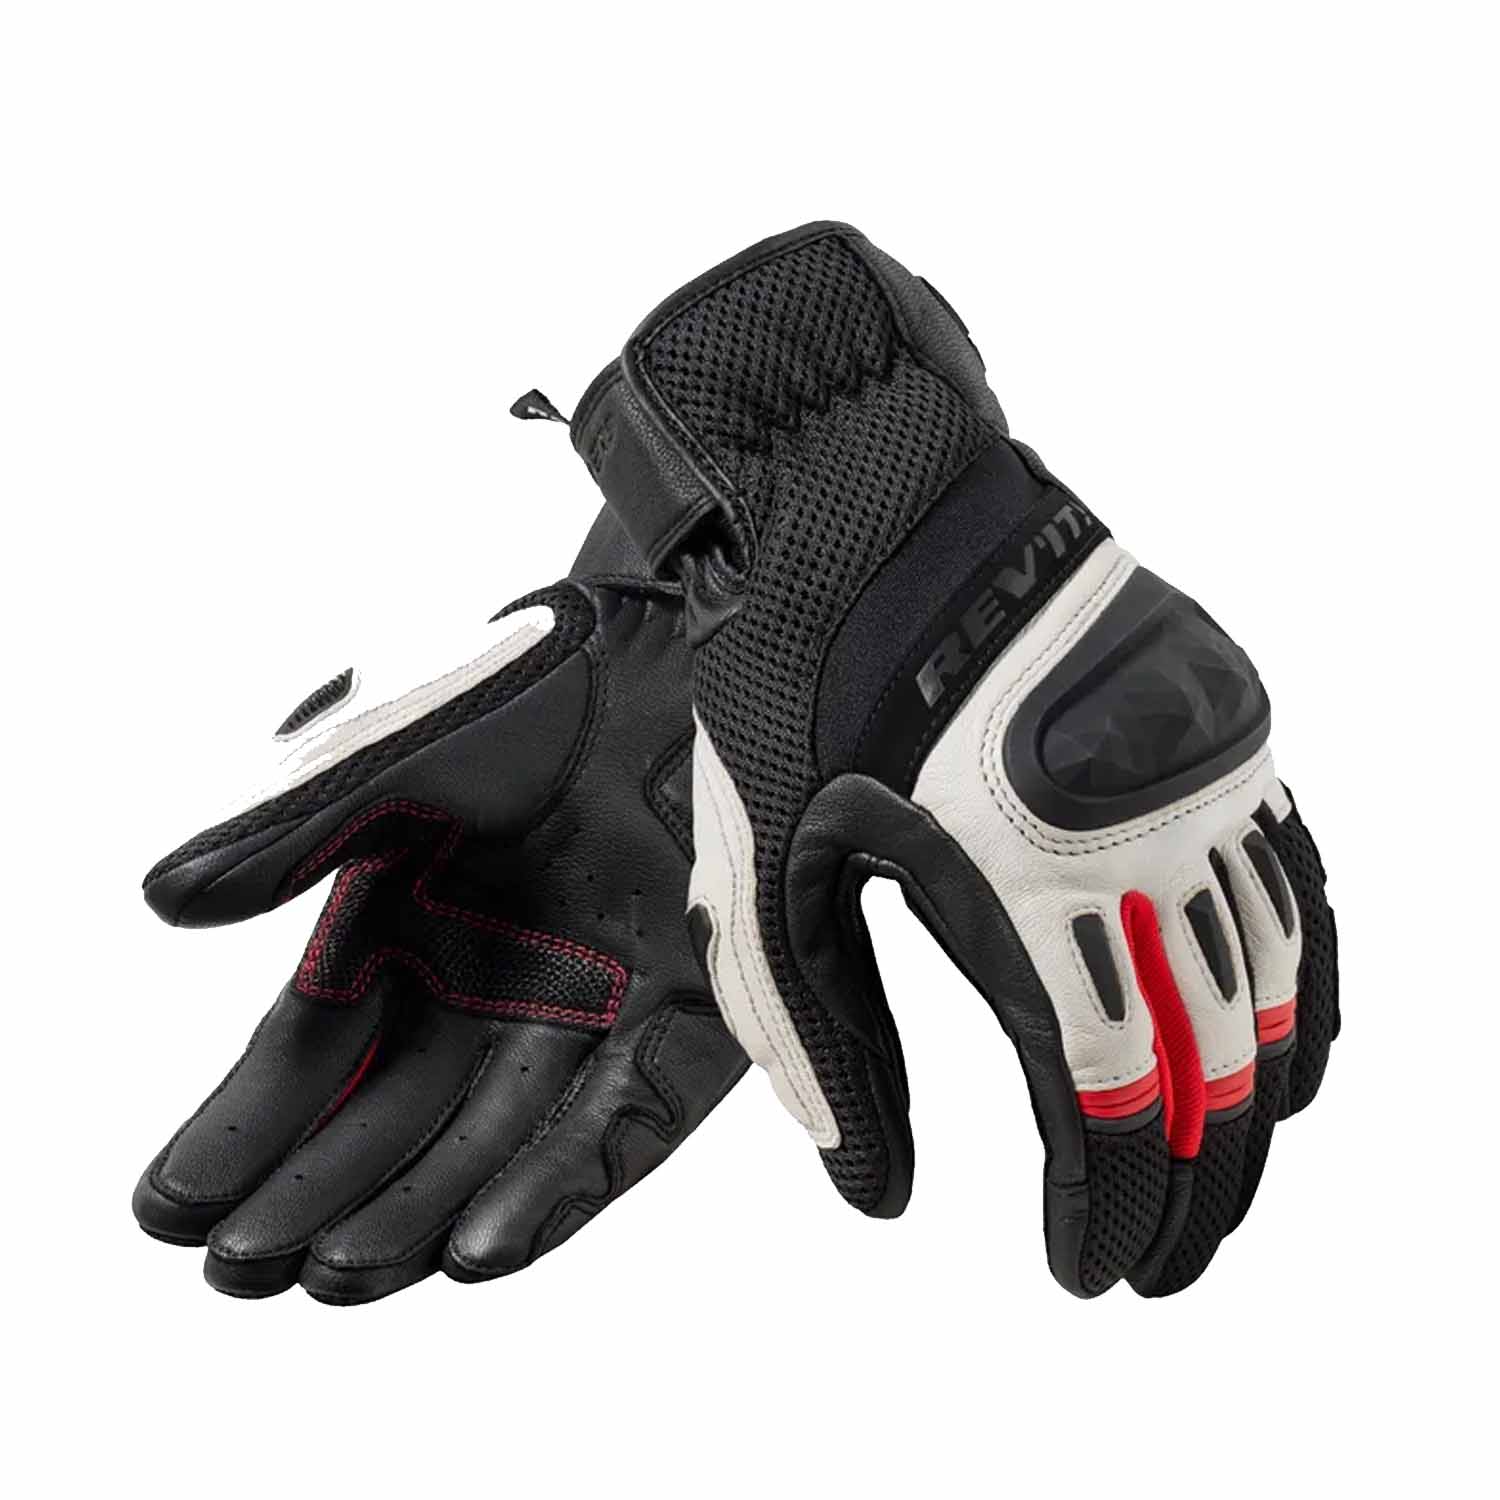 Image of REV'IT! Dirt 4 Gloves Black Red Size XL EN